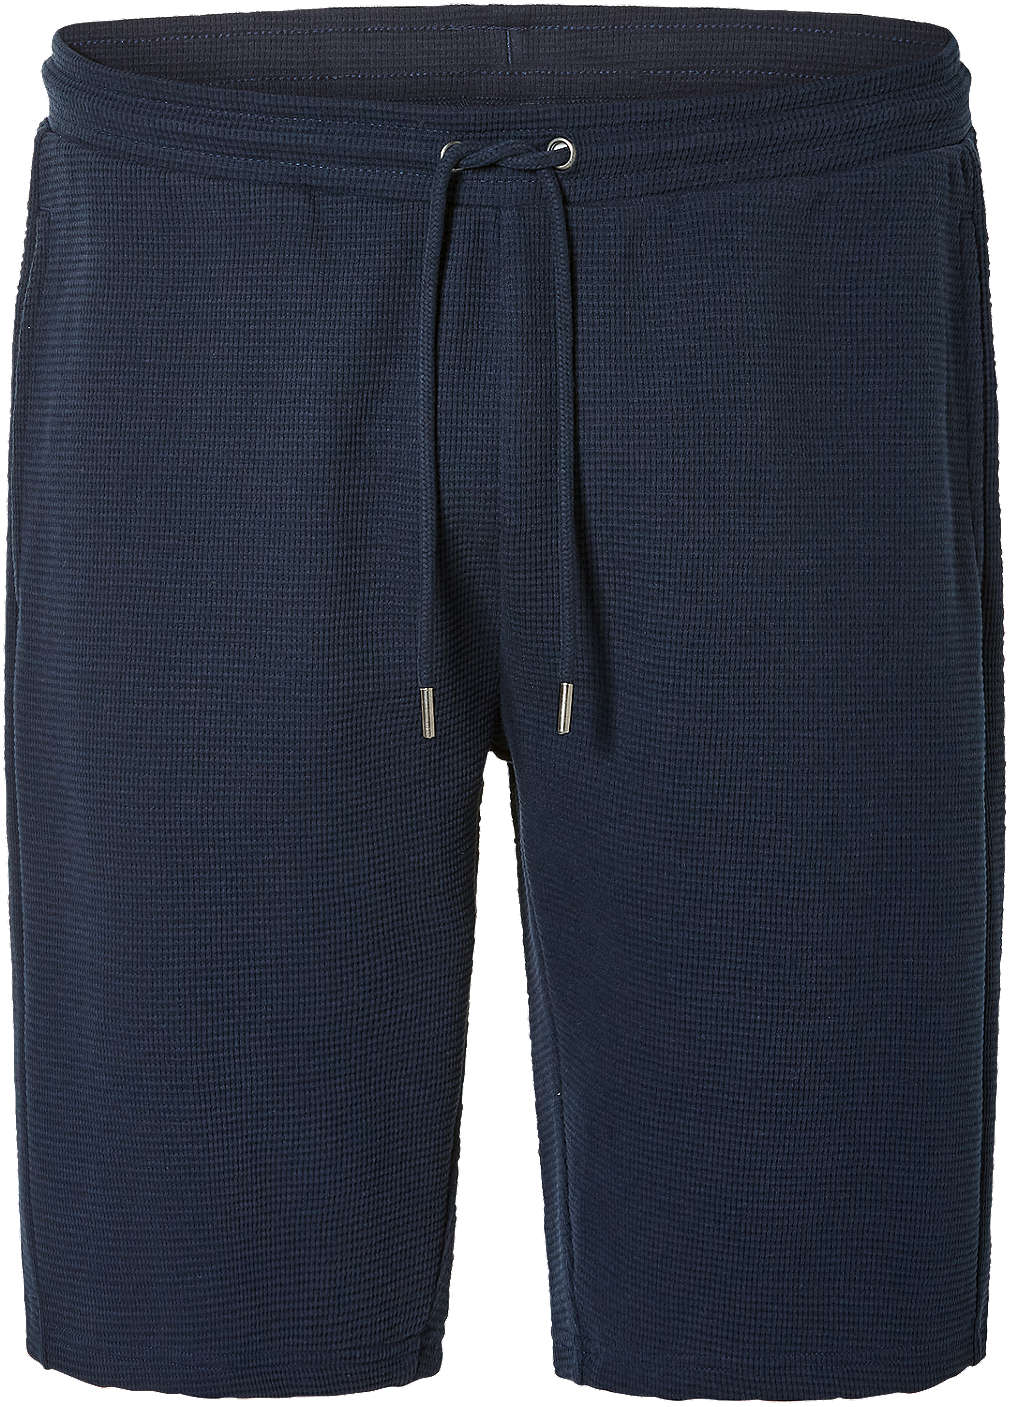 Изображение за продукта Townland Къс панталон M - XL